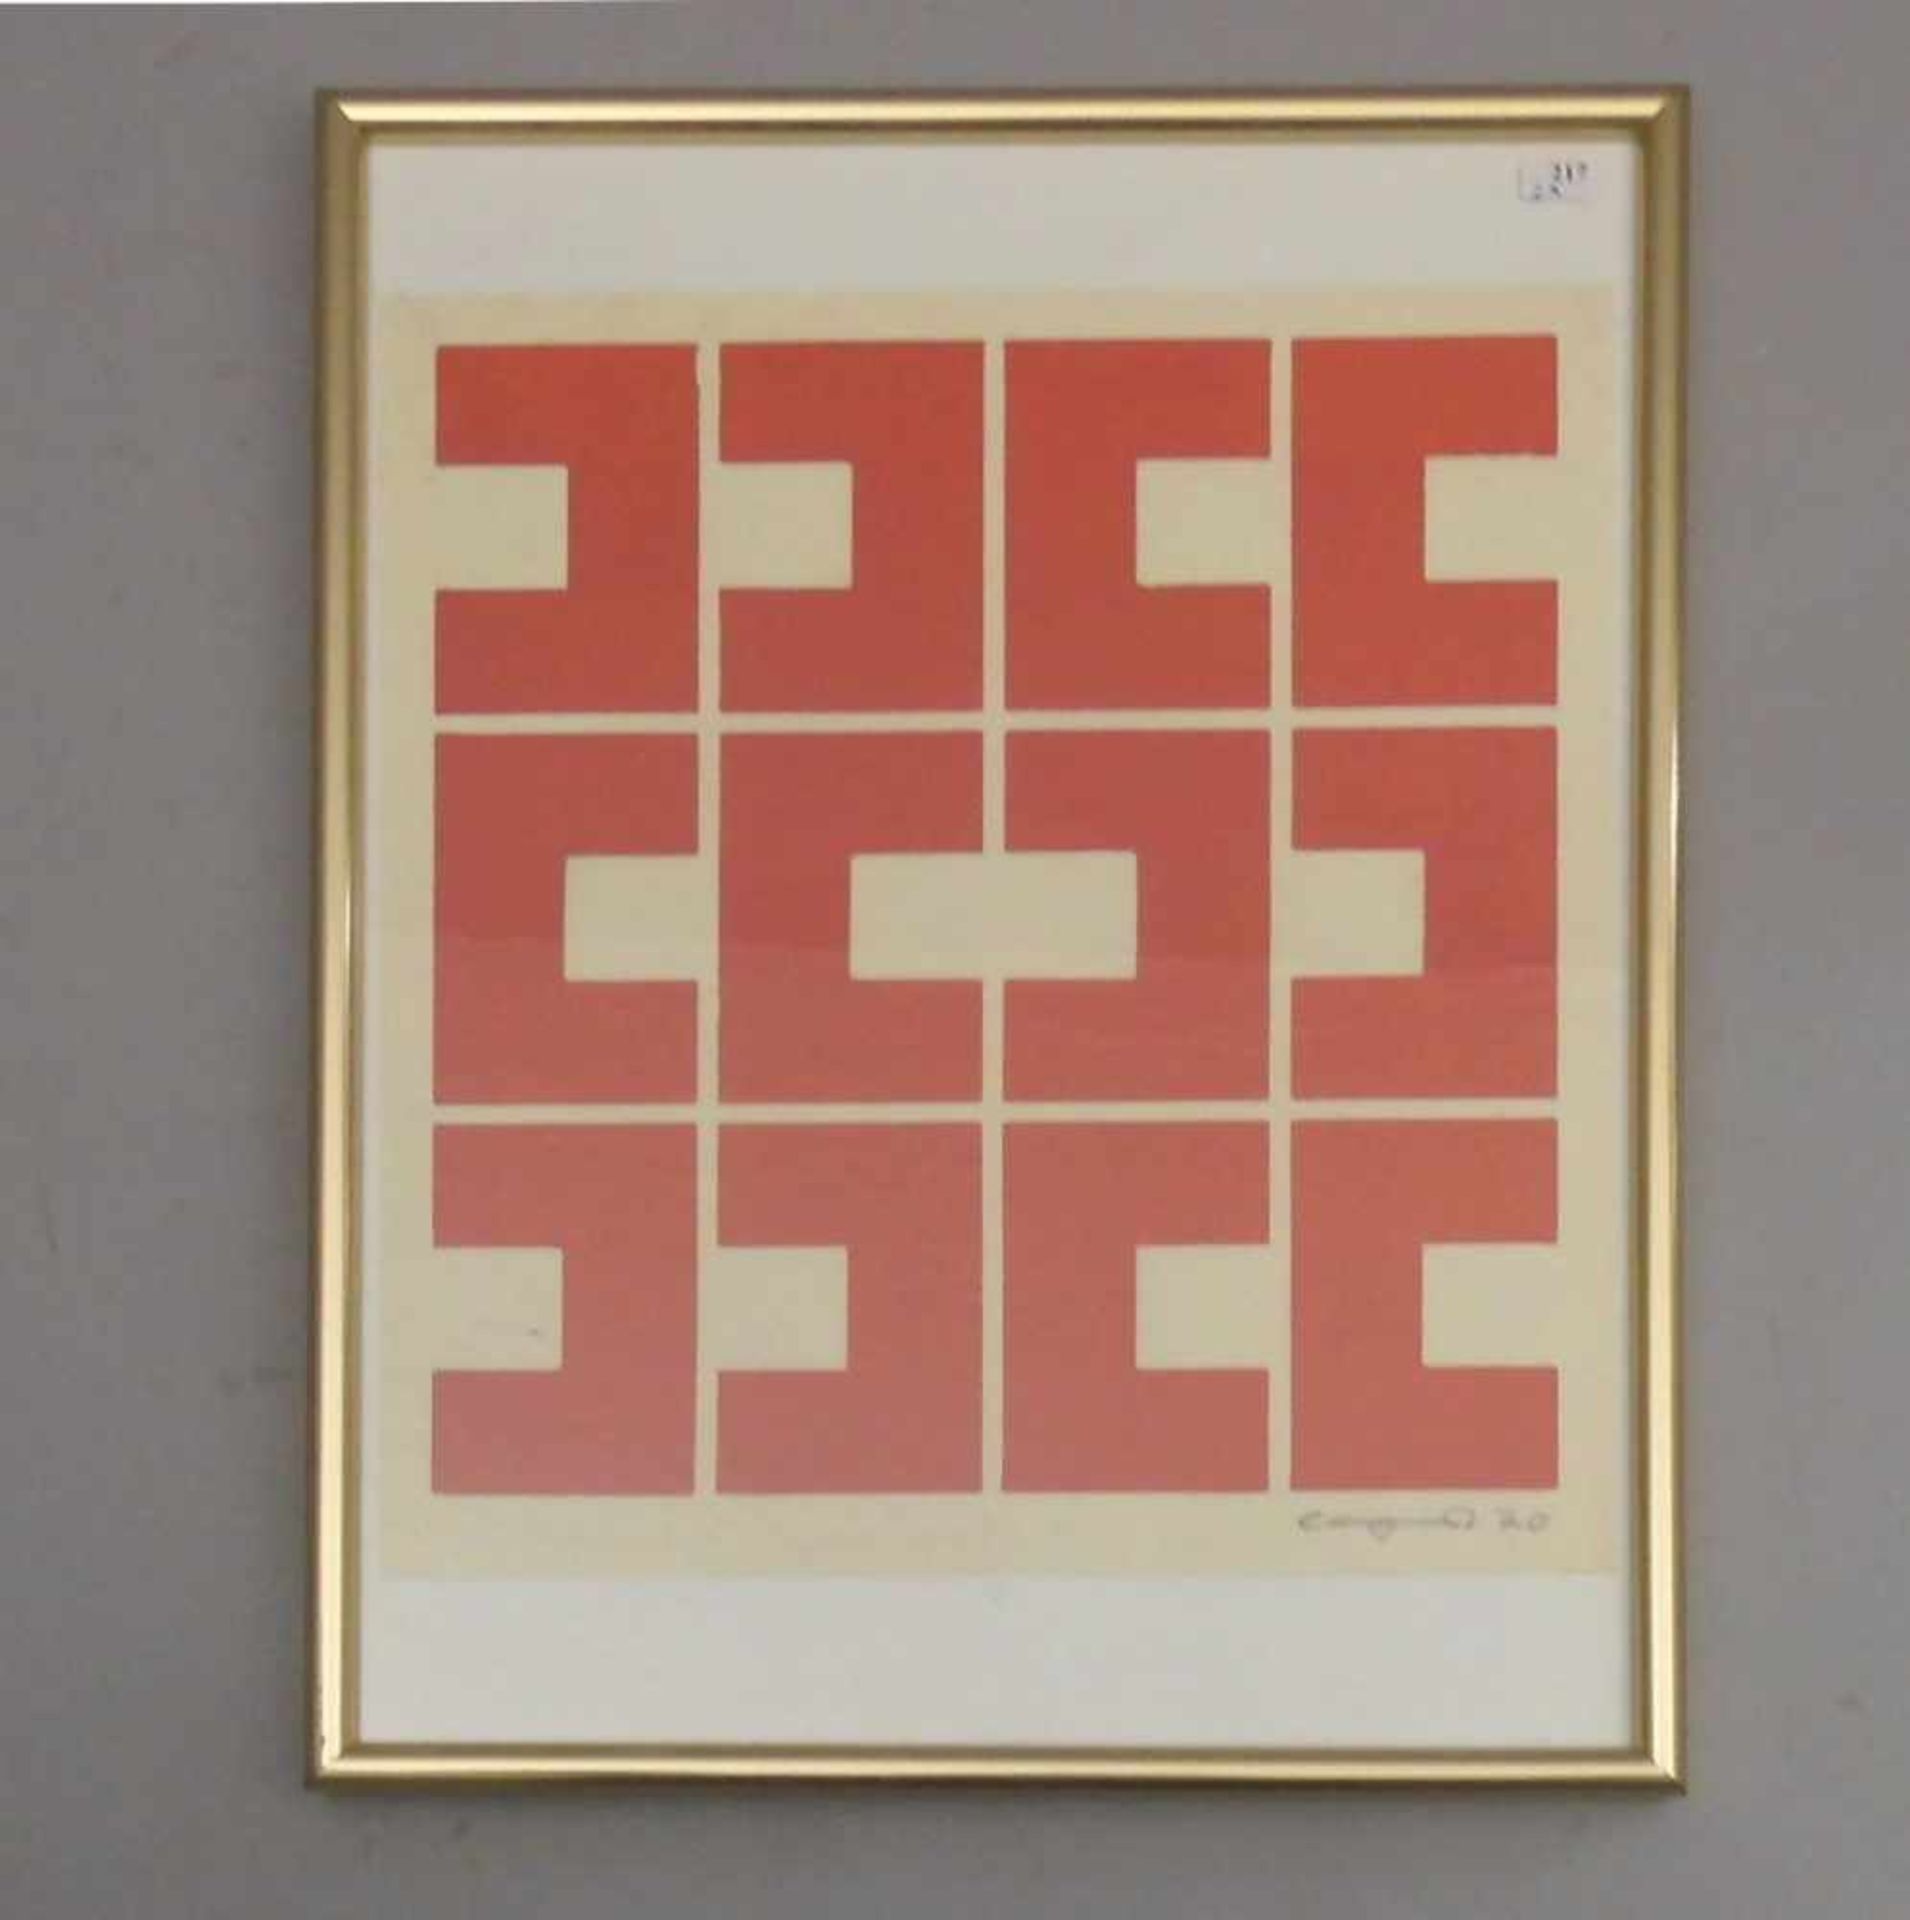 LANGOWSKI, KARL-HEINZ (geb. 1931 in Gelsenkirchen), Paar Linolschnitte: 1) Linolschnitt in 3 Farben: